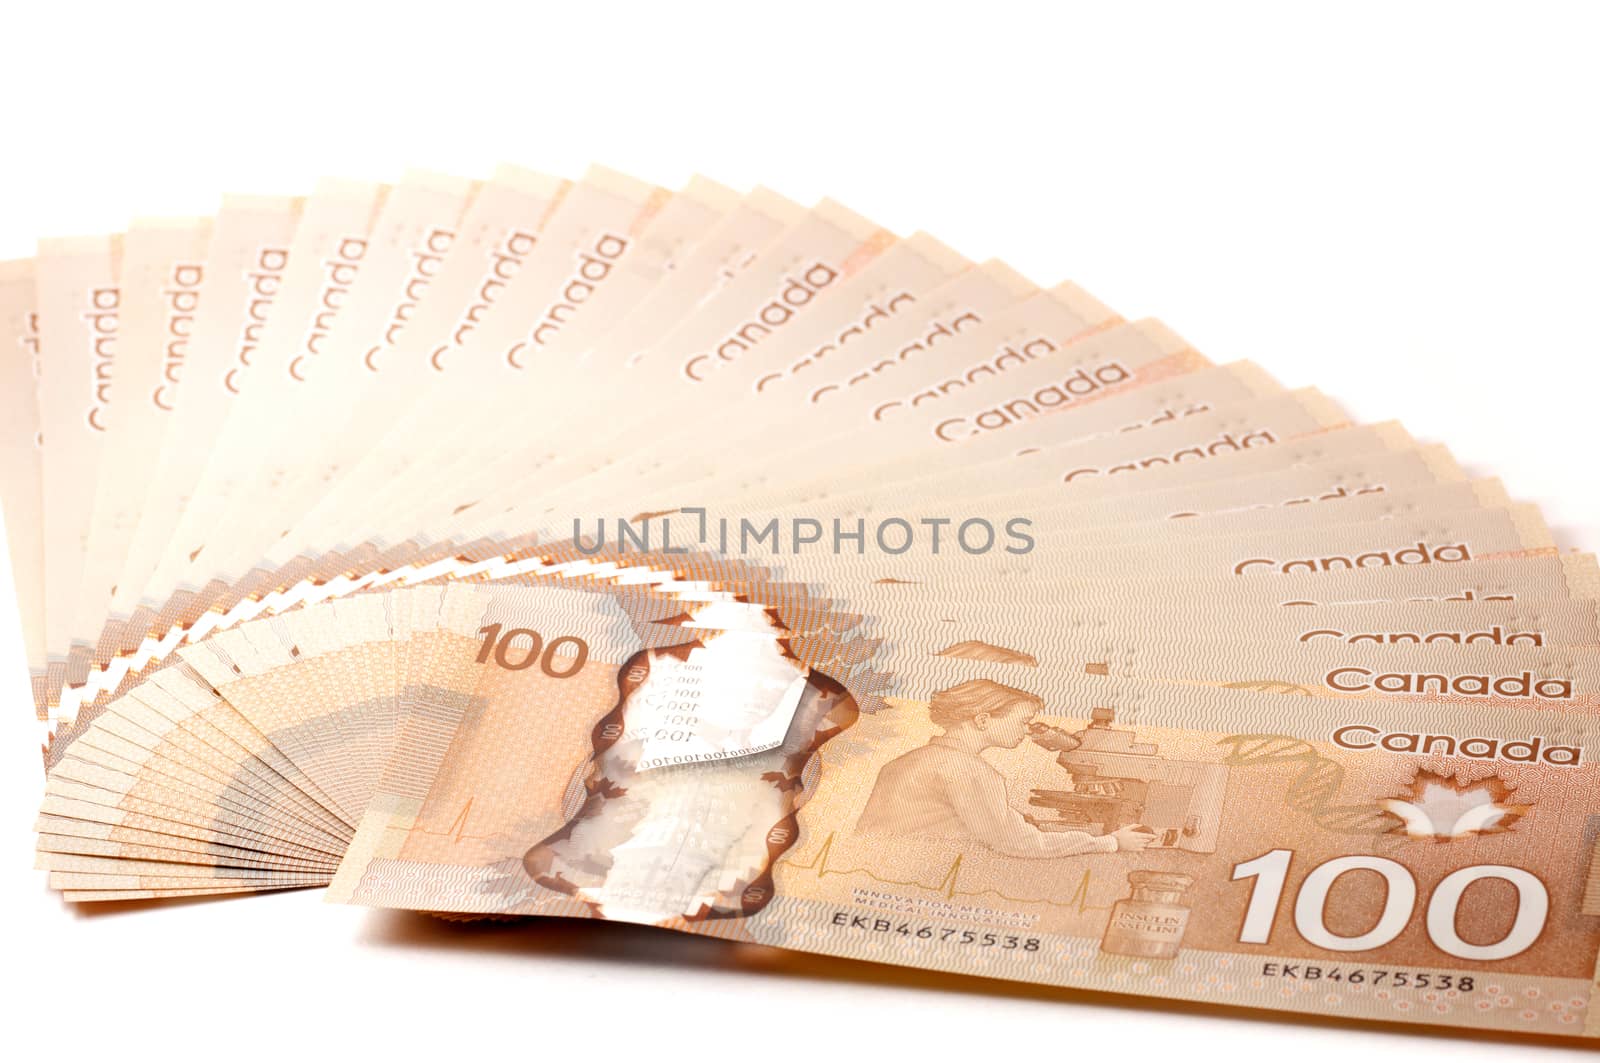 Canadian 100 dollar bills by daoleduc